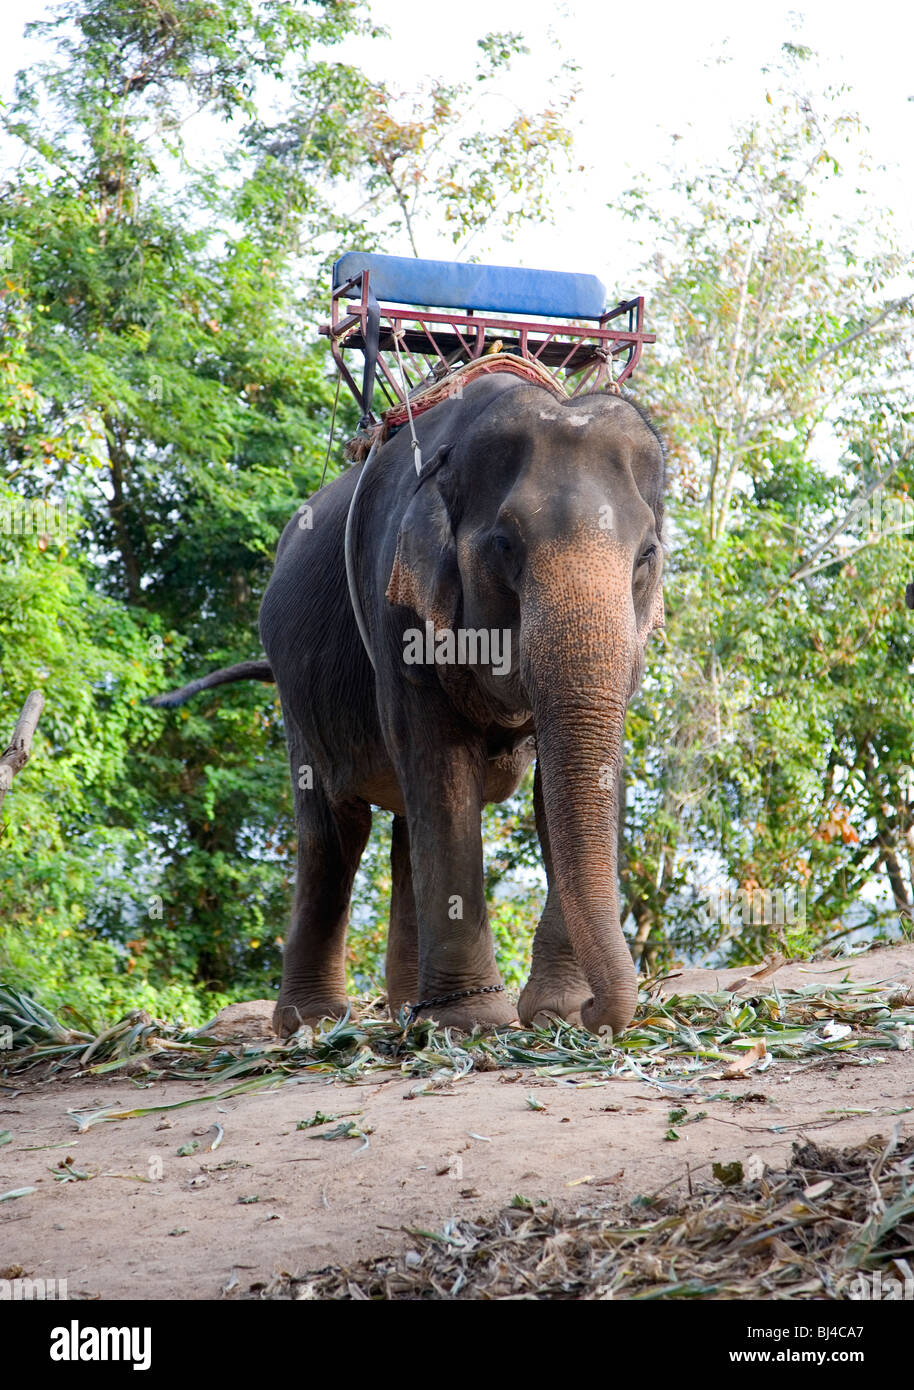 Elefant in Phuket mit Sitz für Touristen zu fahren Stockfoto